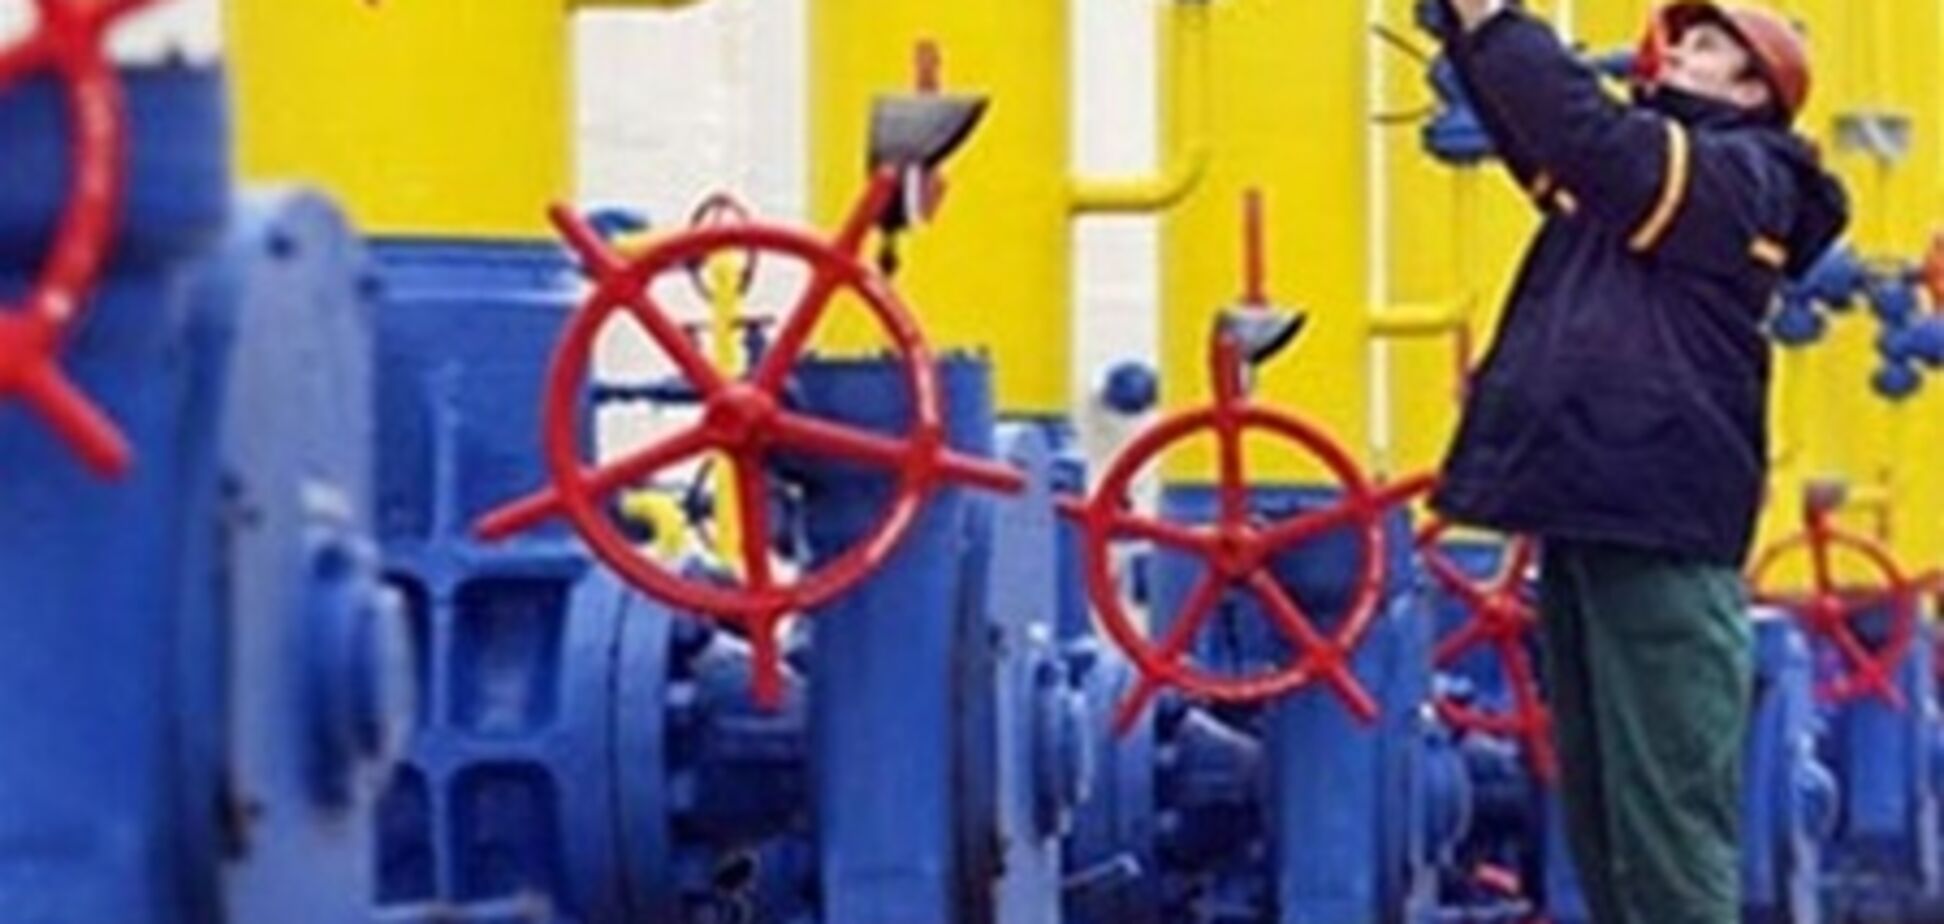 Компания 'Газ Украины' будет ликвидирована в течение года